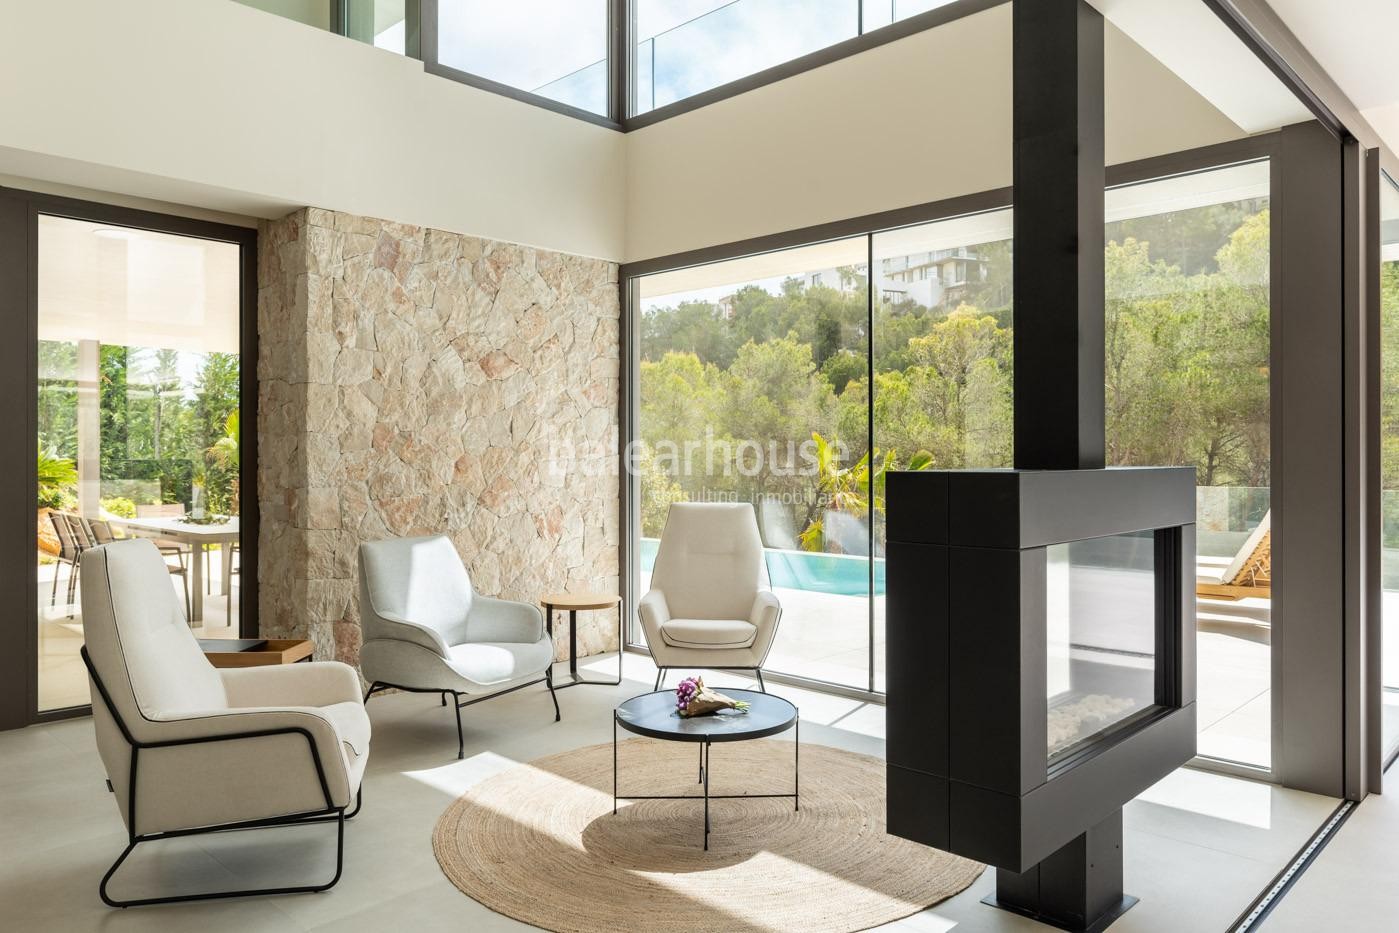 Espectacular villa moderna de obra nueva con bonitas vistas en Costa den Blanes